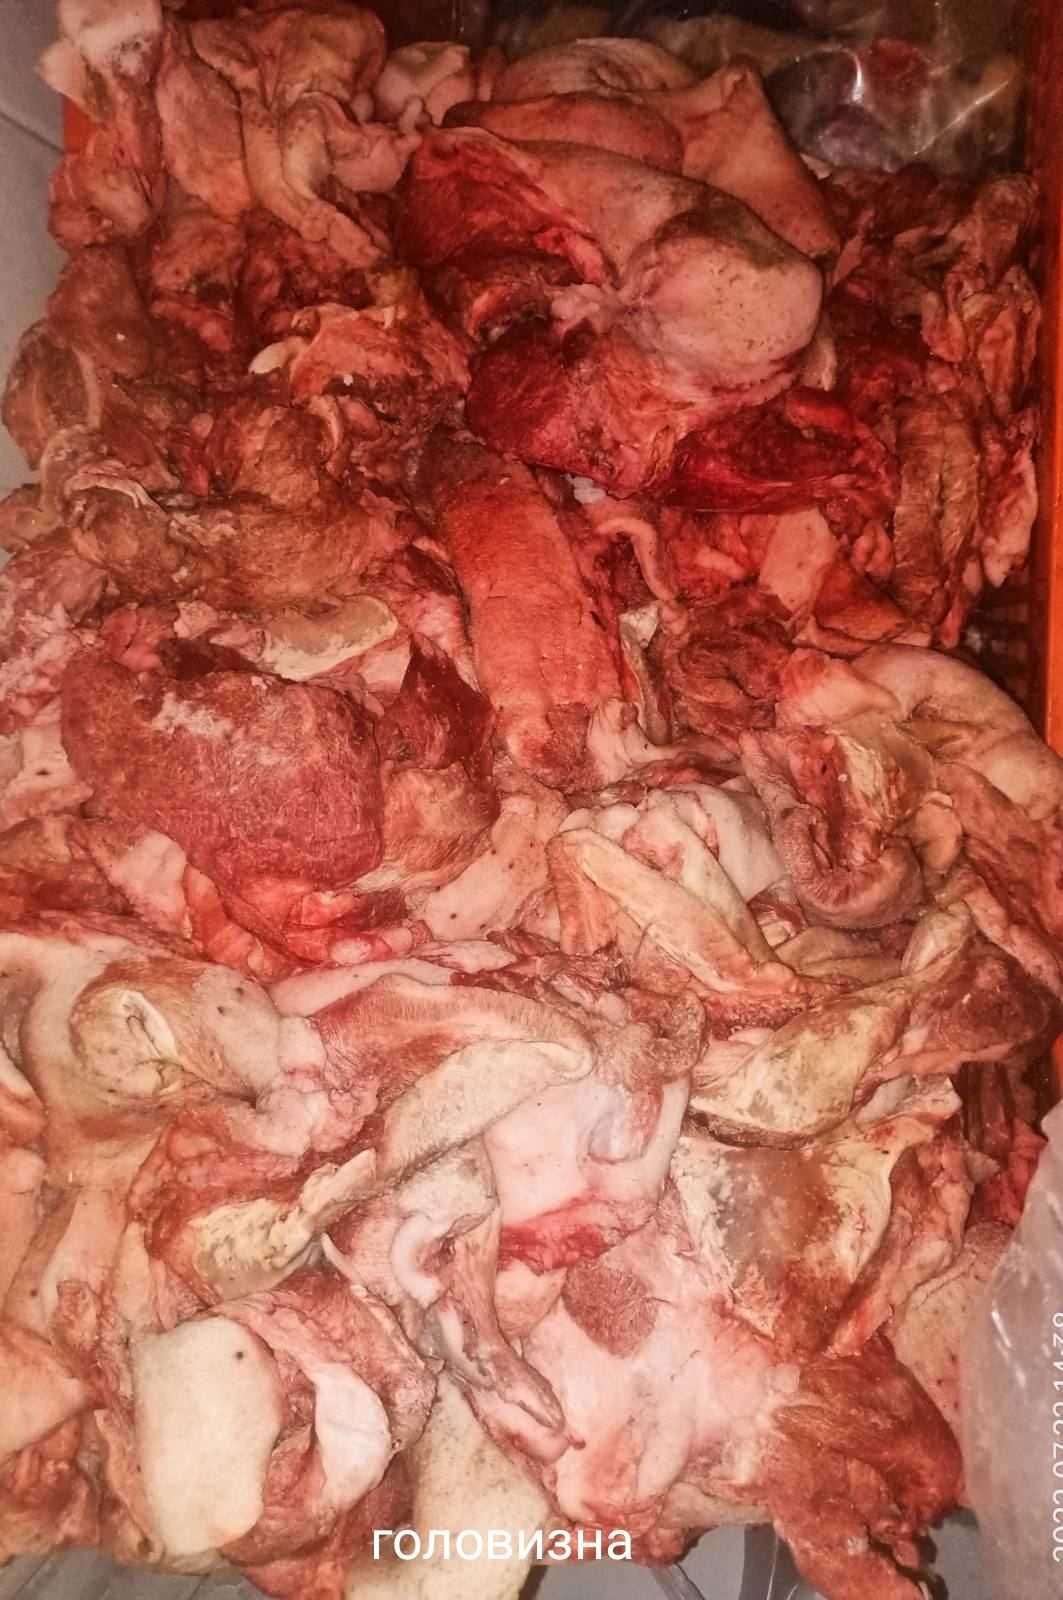 Тримминг обрезь свинина. Яловичина говядина, куриное мясо,балык,окорок